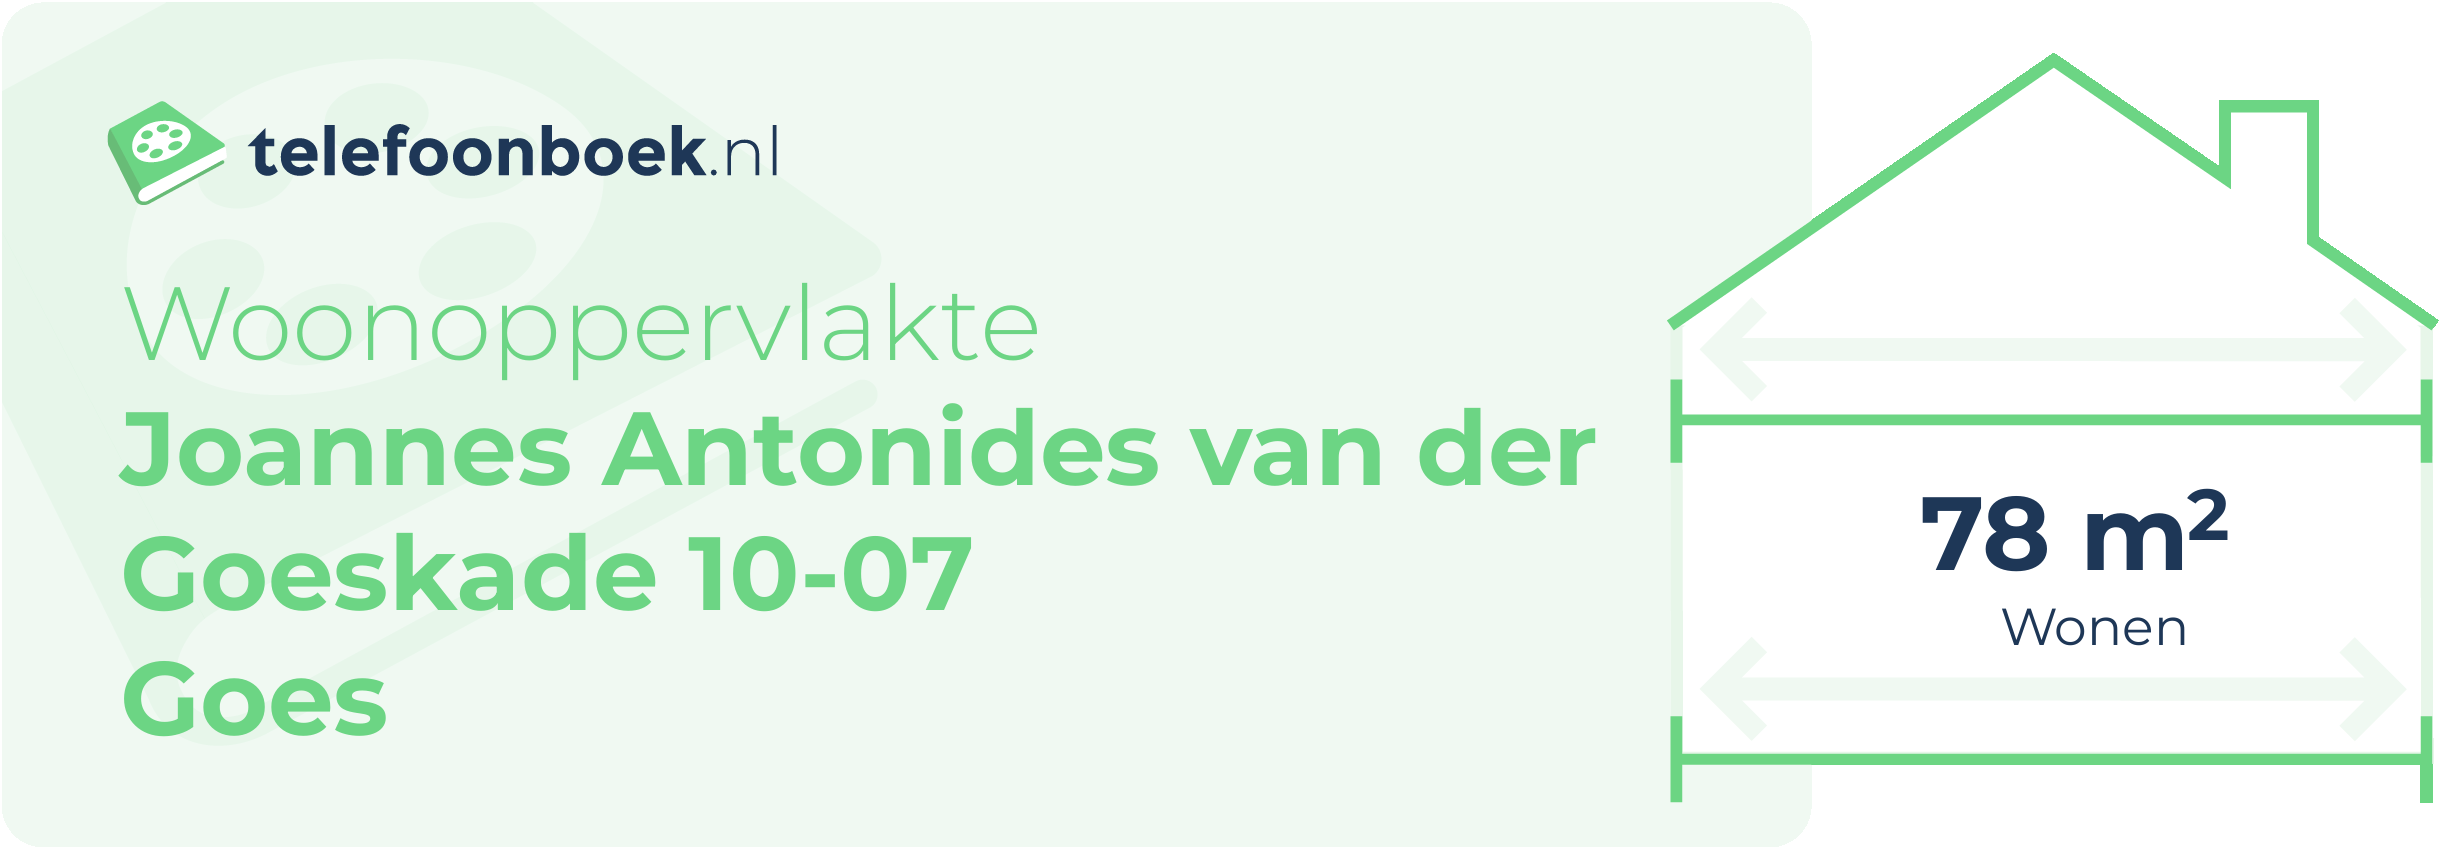 Woonoppervlakte Joannes Antonides Van Der Goeskade 10-07 Goes